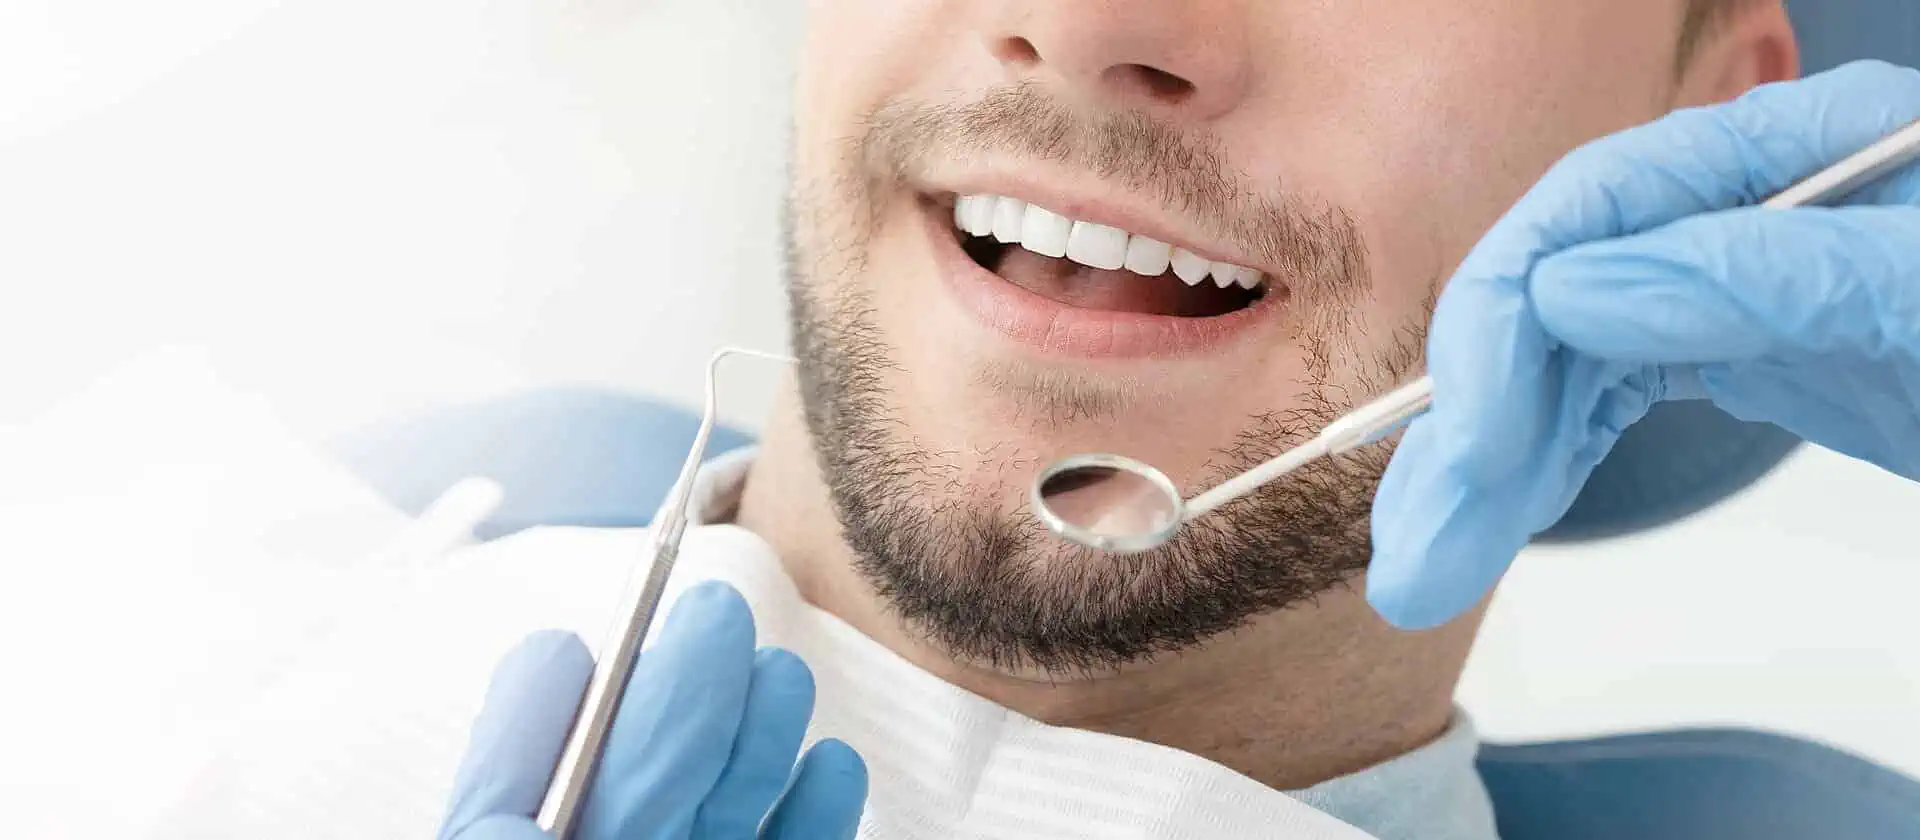 Lächelnder Mann bei der professionellen Zahnreinigung